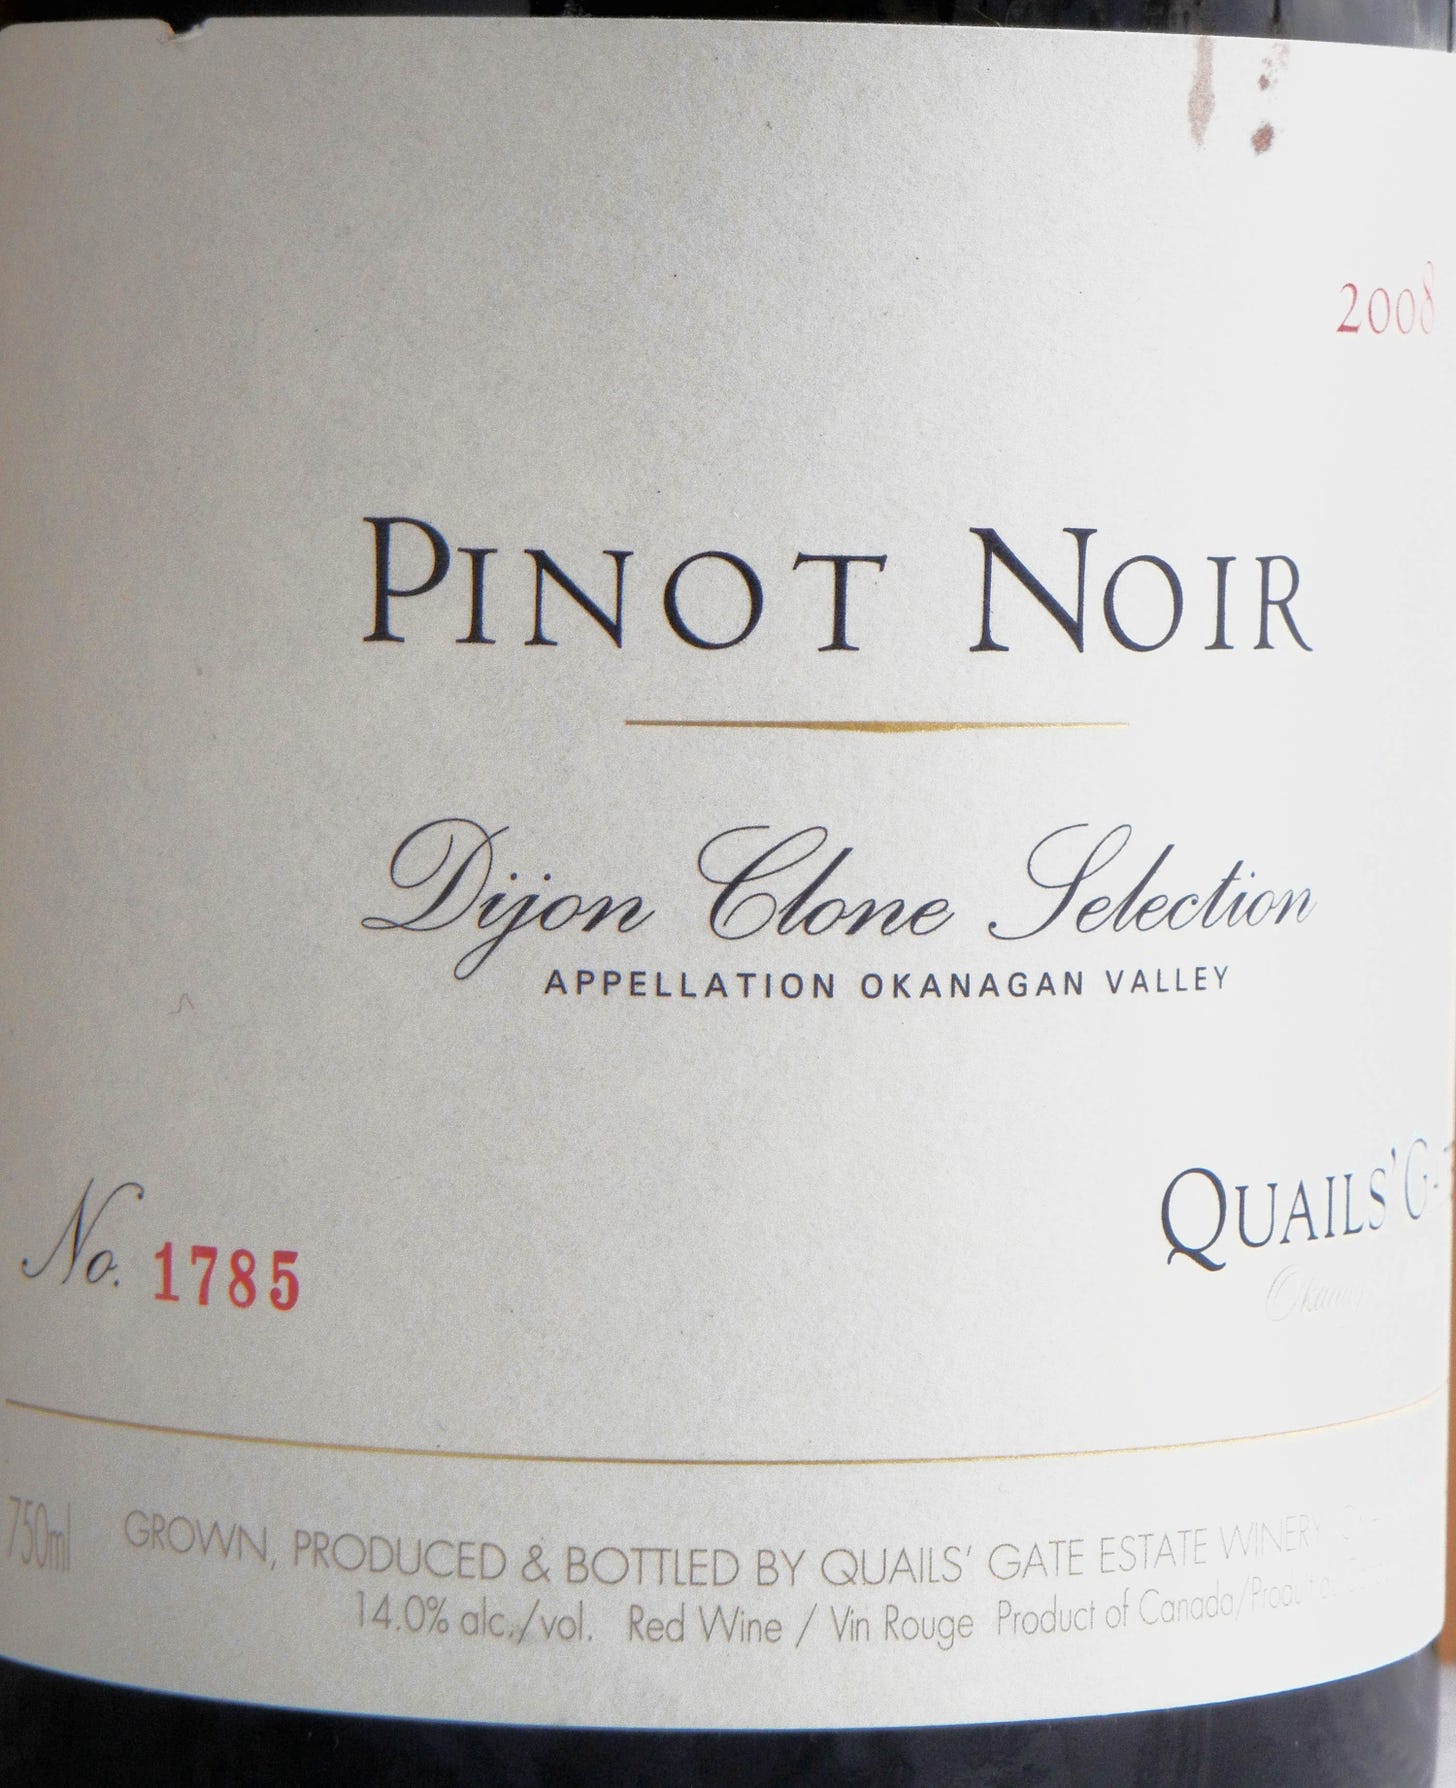 Quails' Gate Dijon Clone Pinot Noir 2008 Label - BC Pinot Noir Tasting Review 16 Quails' Gate Dijon Clone Pinot Noir 2008 Label